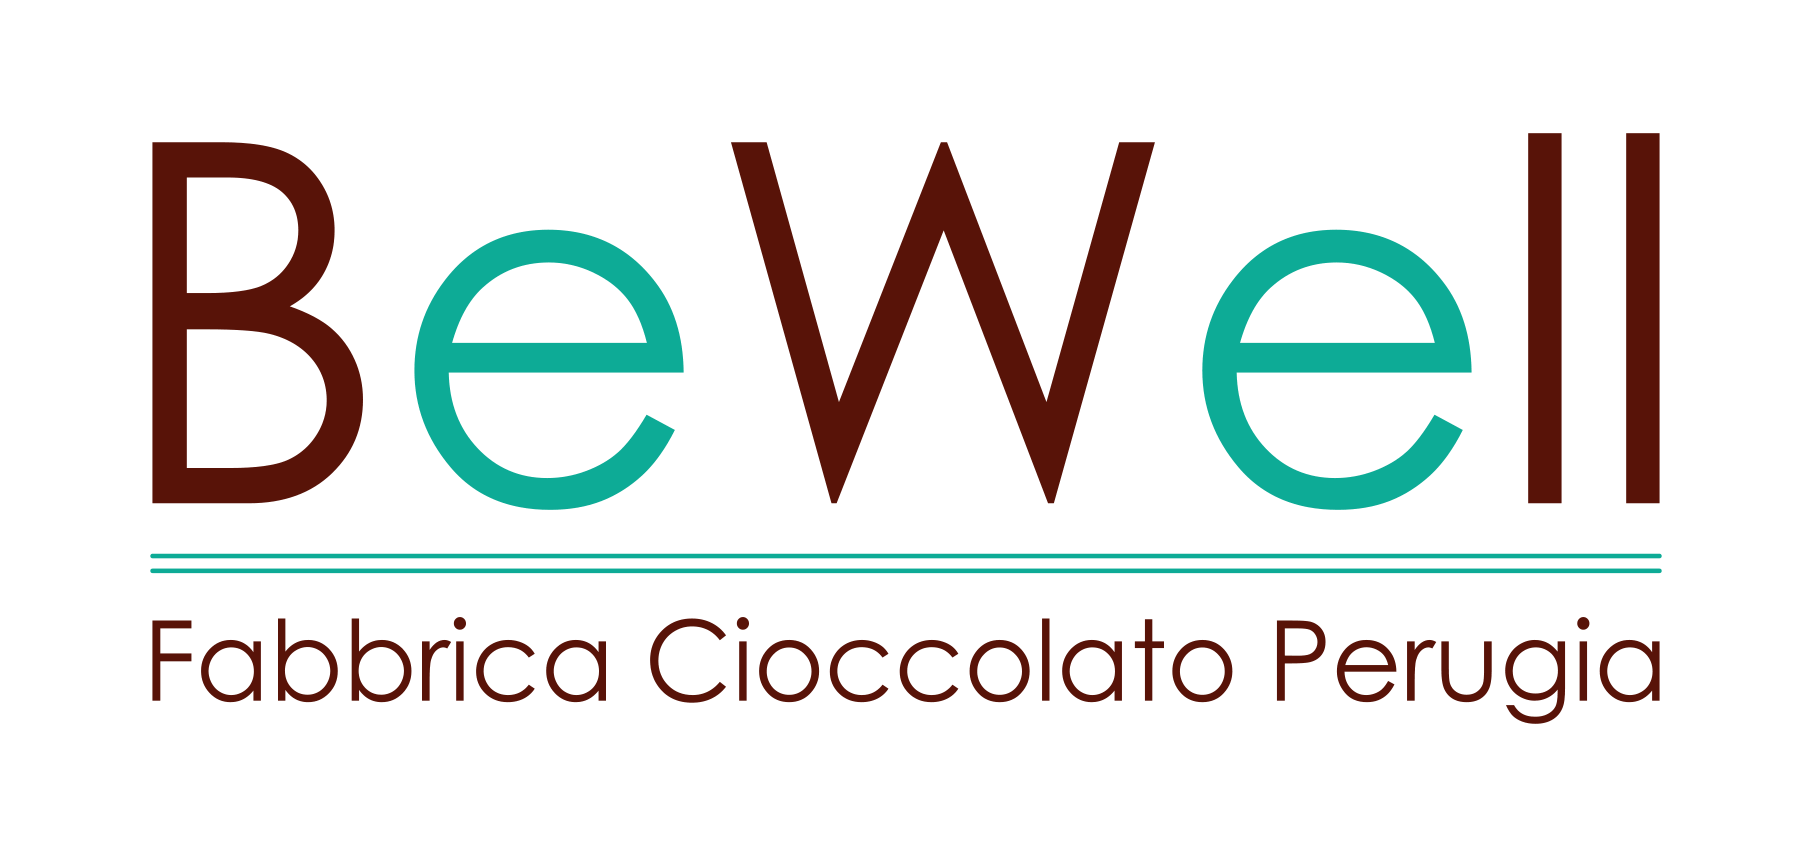 antica cioccolateria perugia - Bewellgroup.it